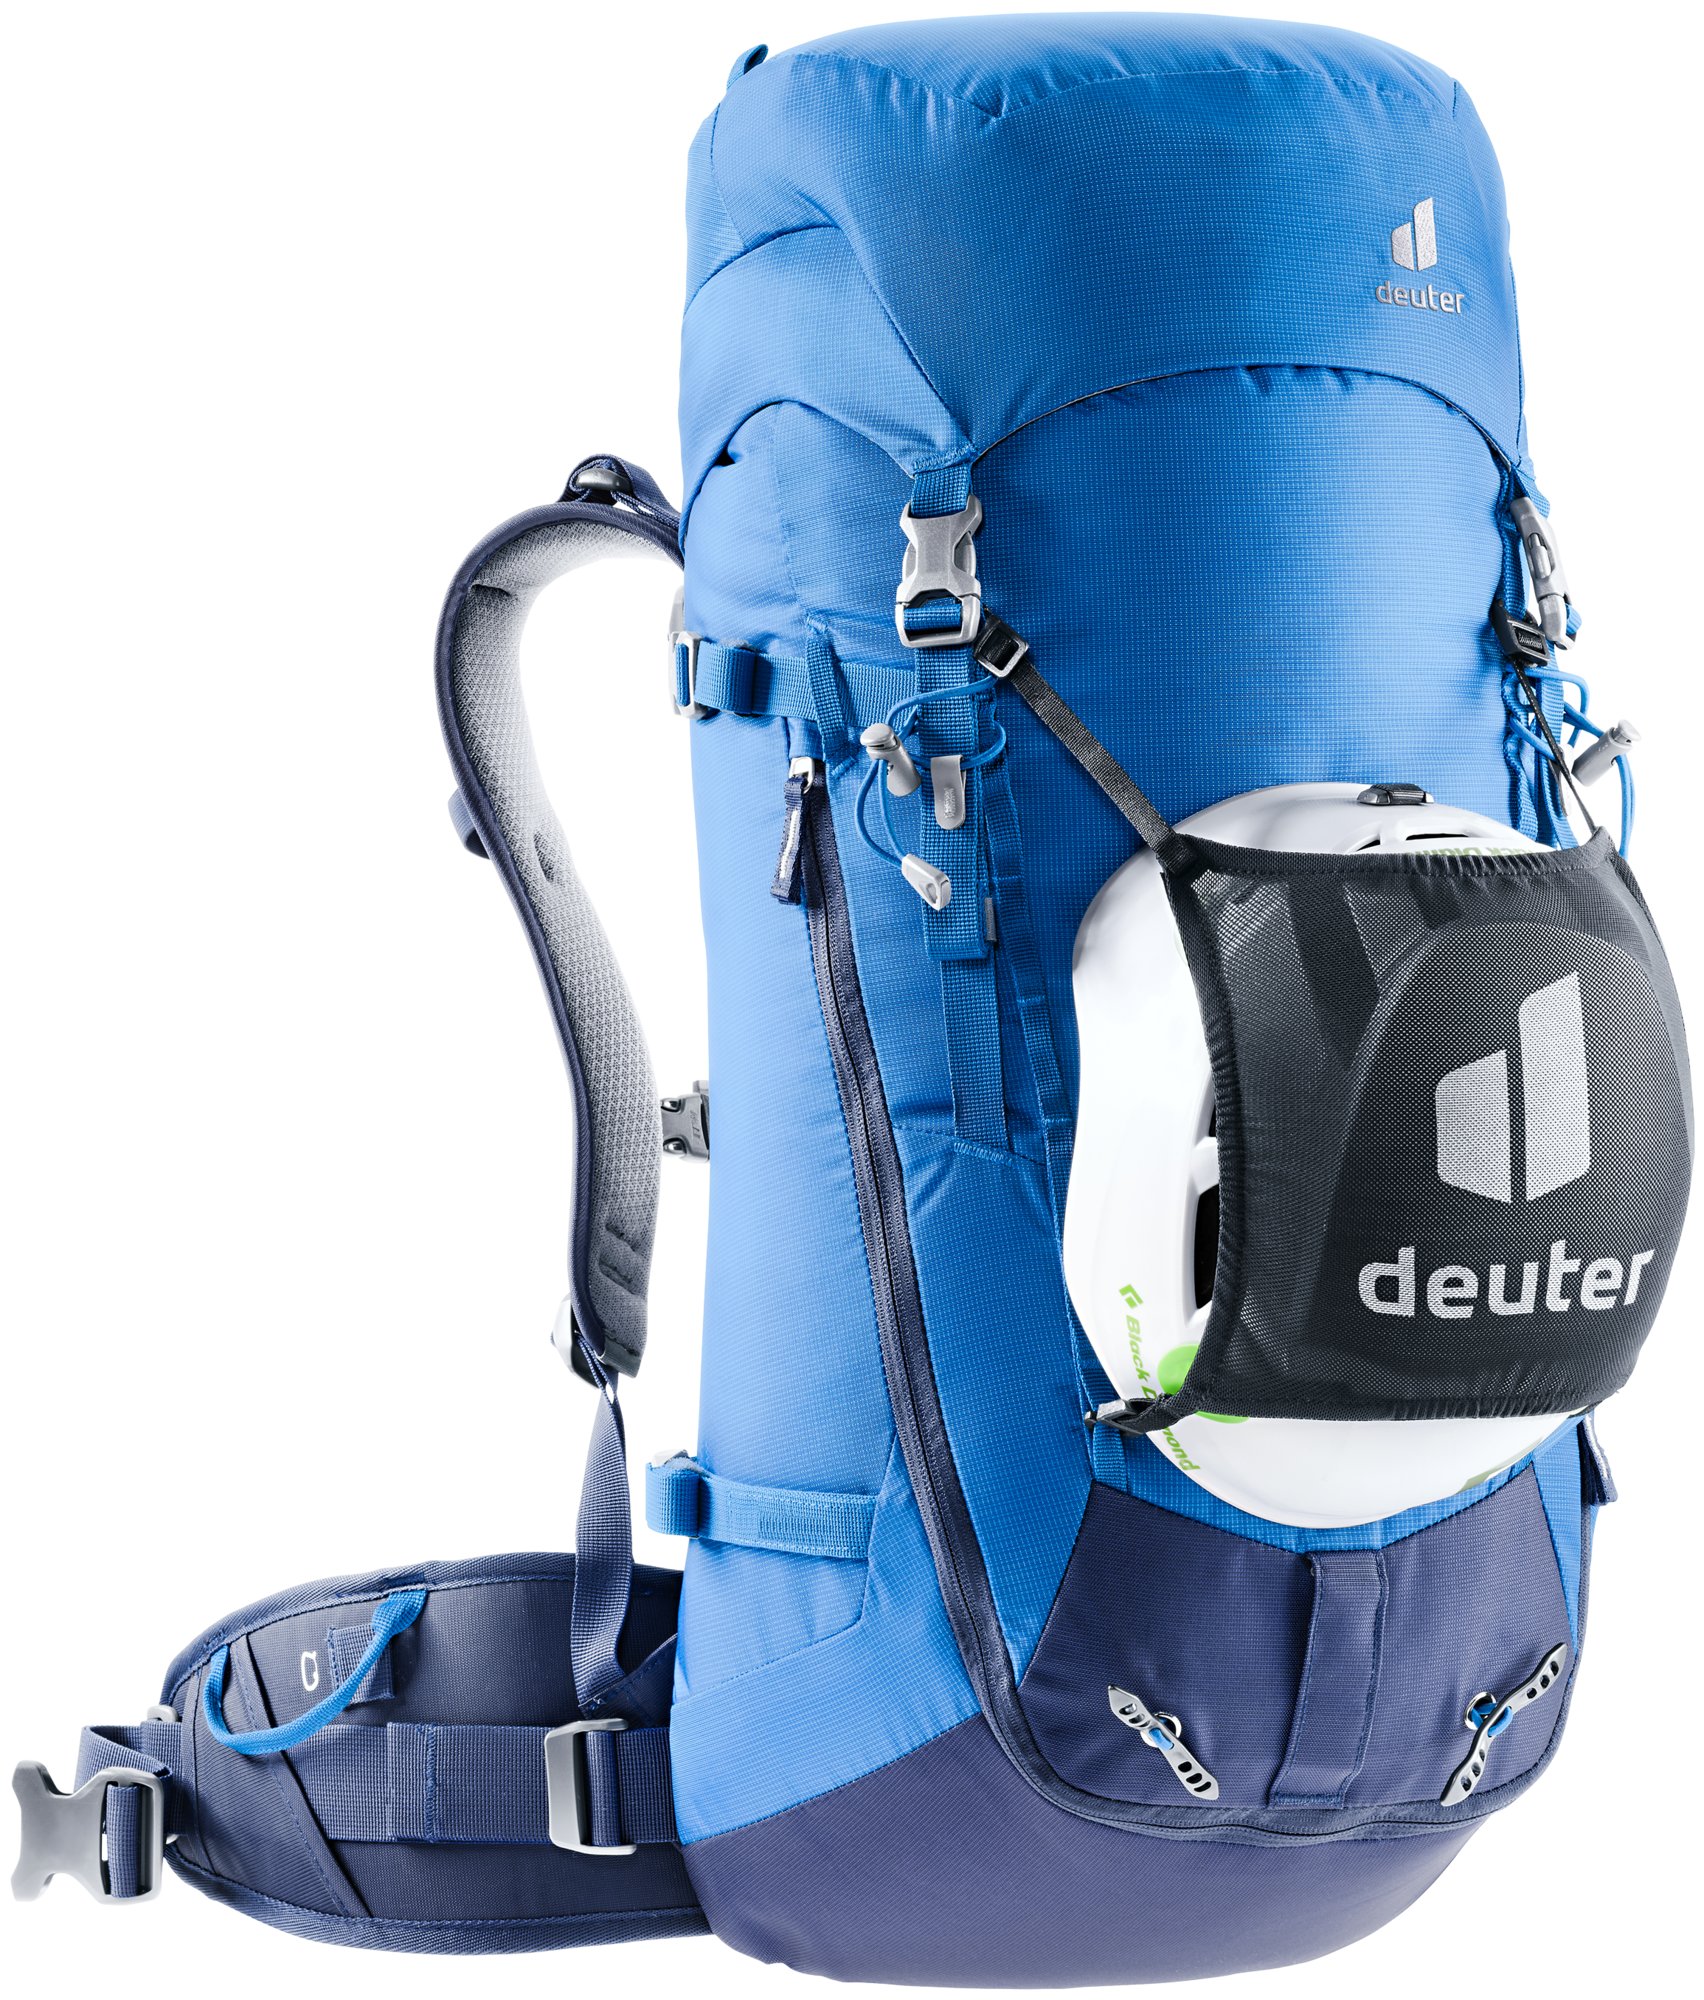 Deuter - Guide 34+, Alpin-Rucksack